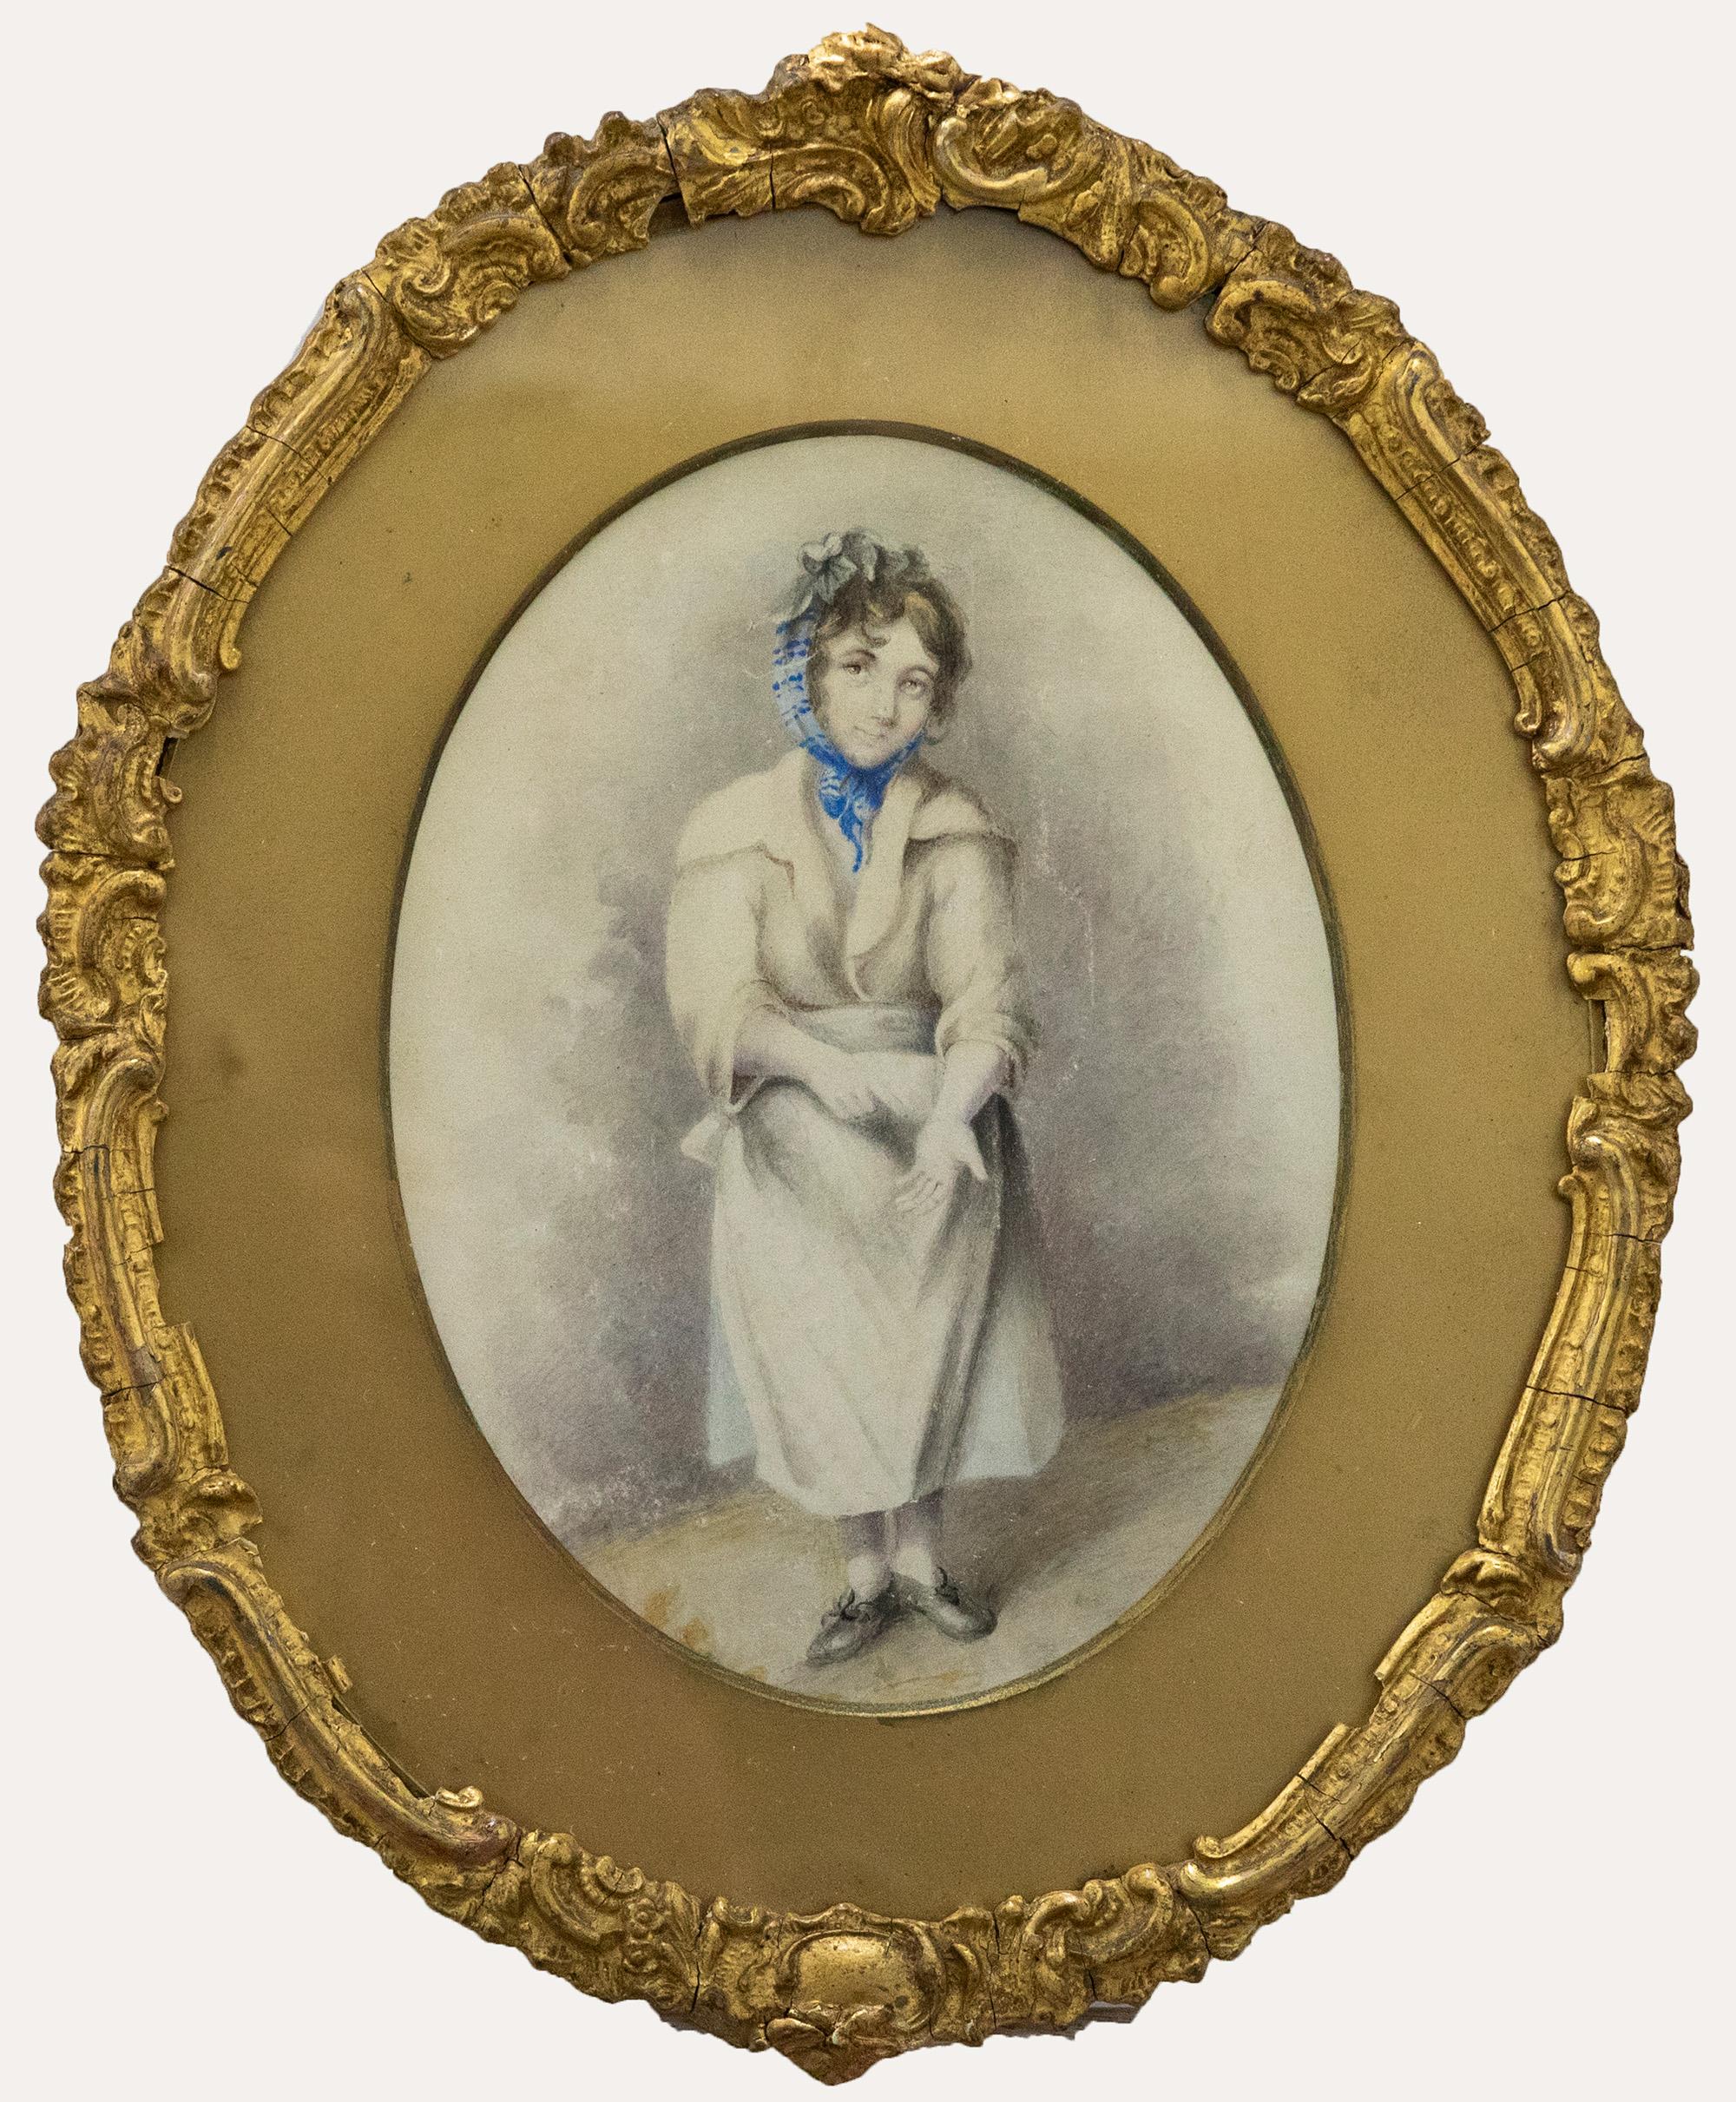 Une charmante aquarelle représentant une jeune femme portant une robe et une blouse. Elle montre la paume de sa main gauche à l'observateur. L'artiste la capture d'une main délicate en montrant de fins détails sur son visage et sa robe. Non signée.